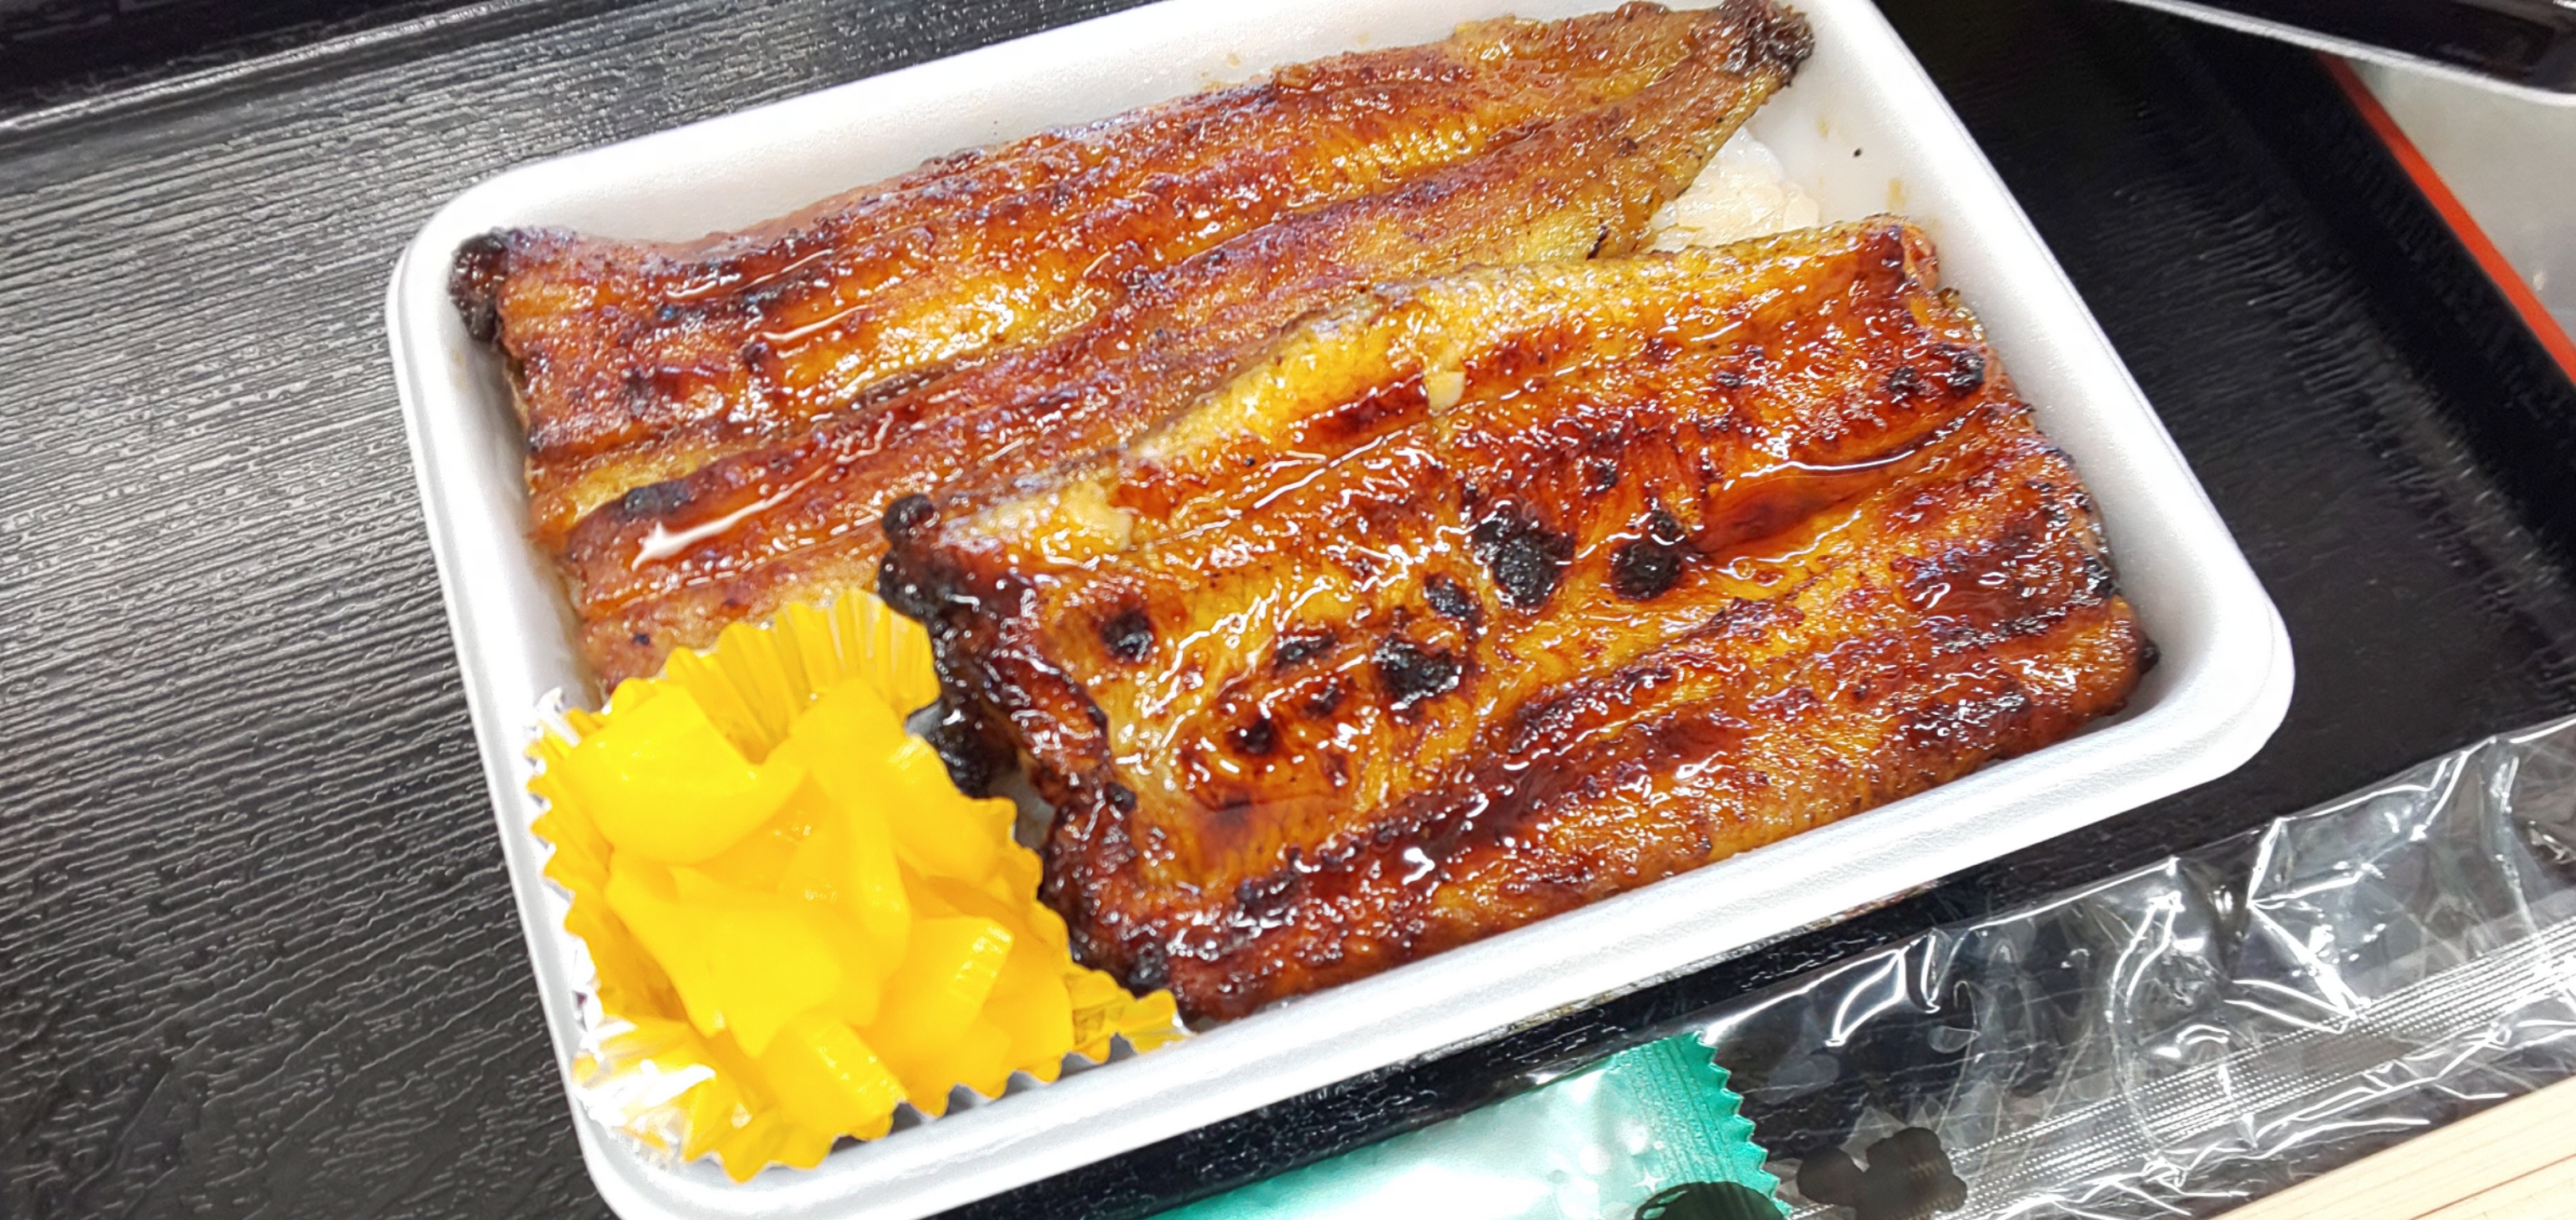 『鰻弁当』
肉厚でふっくらと焼き上げた鰻弁当。
ご自宅でもお楽しみください。